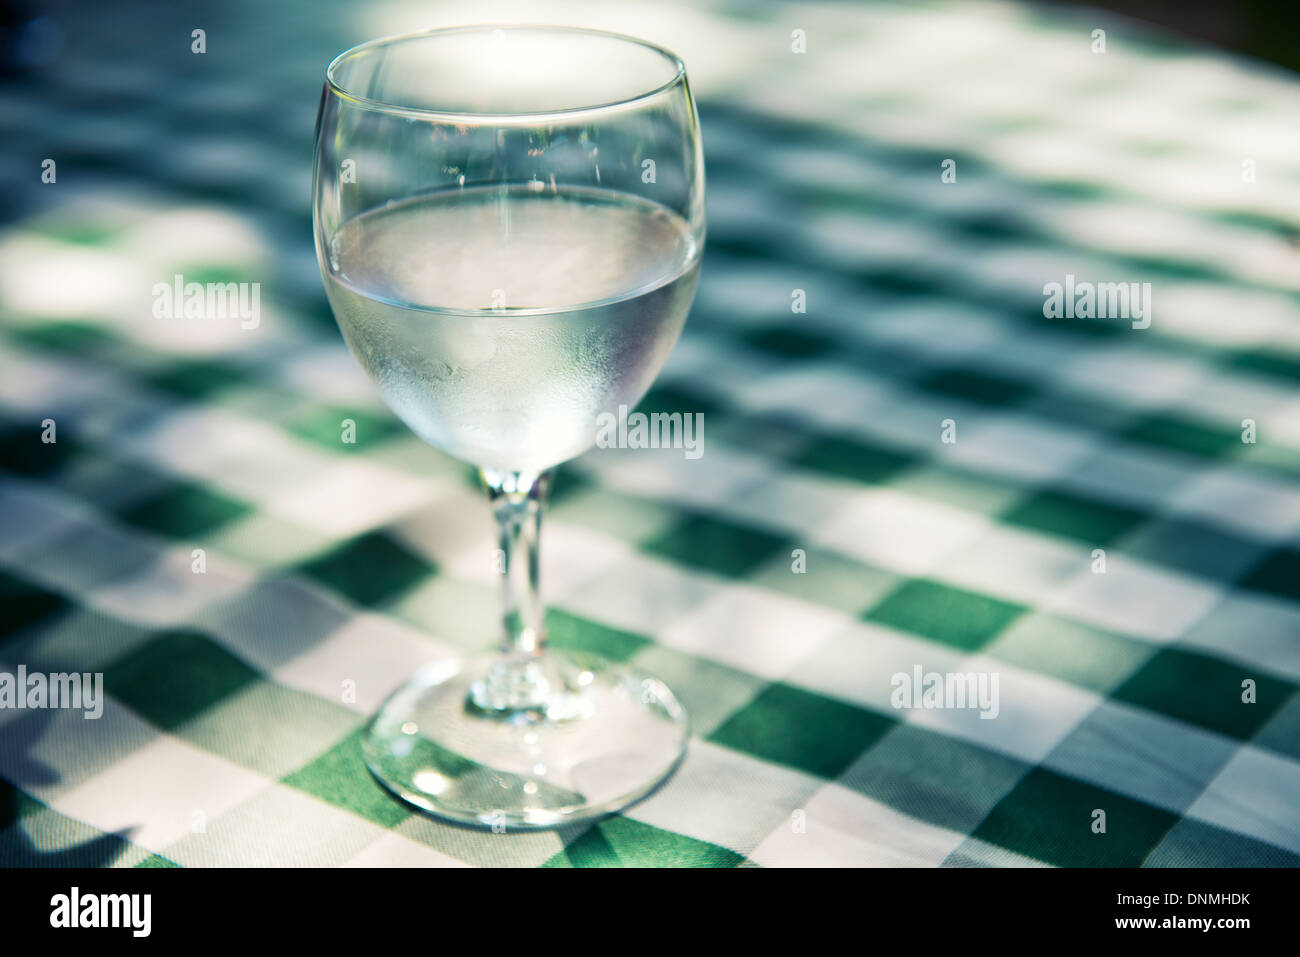 Vaso de agua fresca en la mesa con el mantel de cuadros verdes Foto de stock